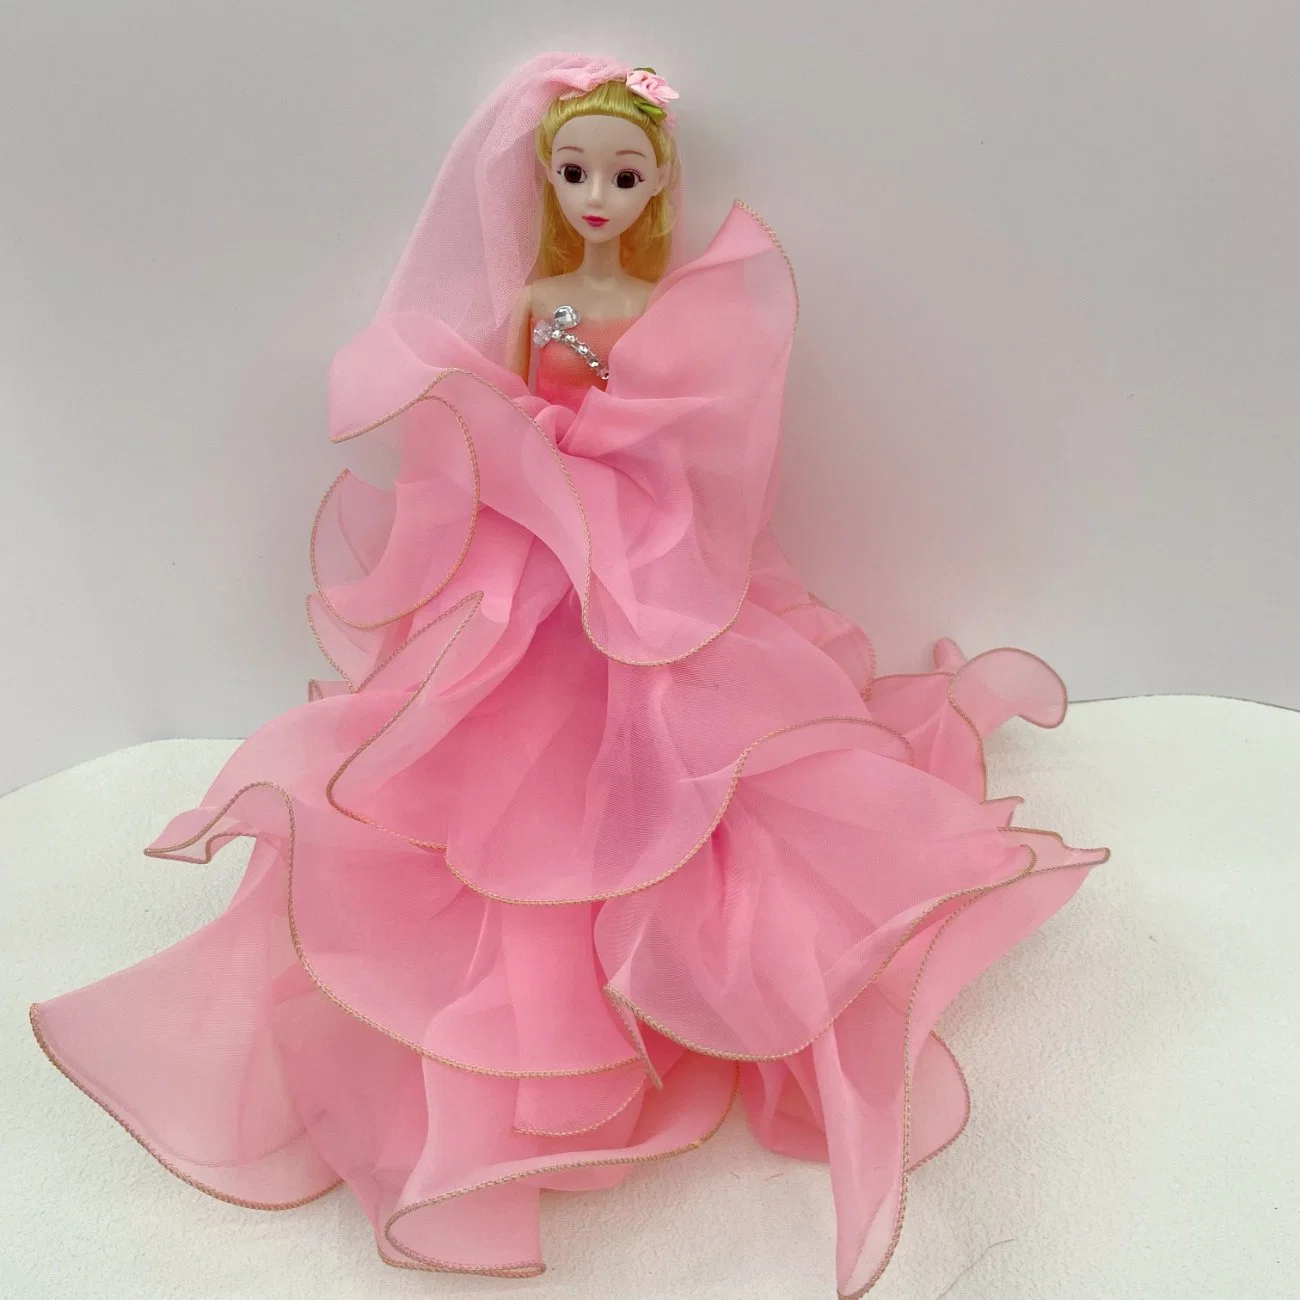 Moda mayorista Barbiees Muñecas Princesa Chica Toy Mini muñeca o. Disfrazarse ropa Accesorios Princessmusic y canto